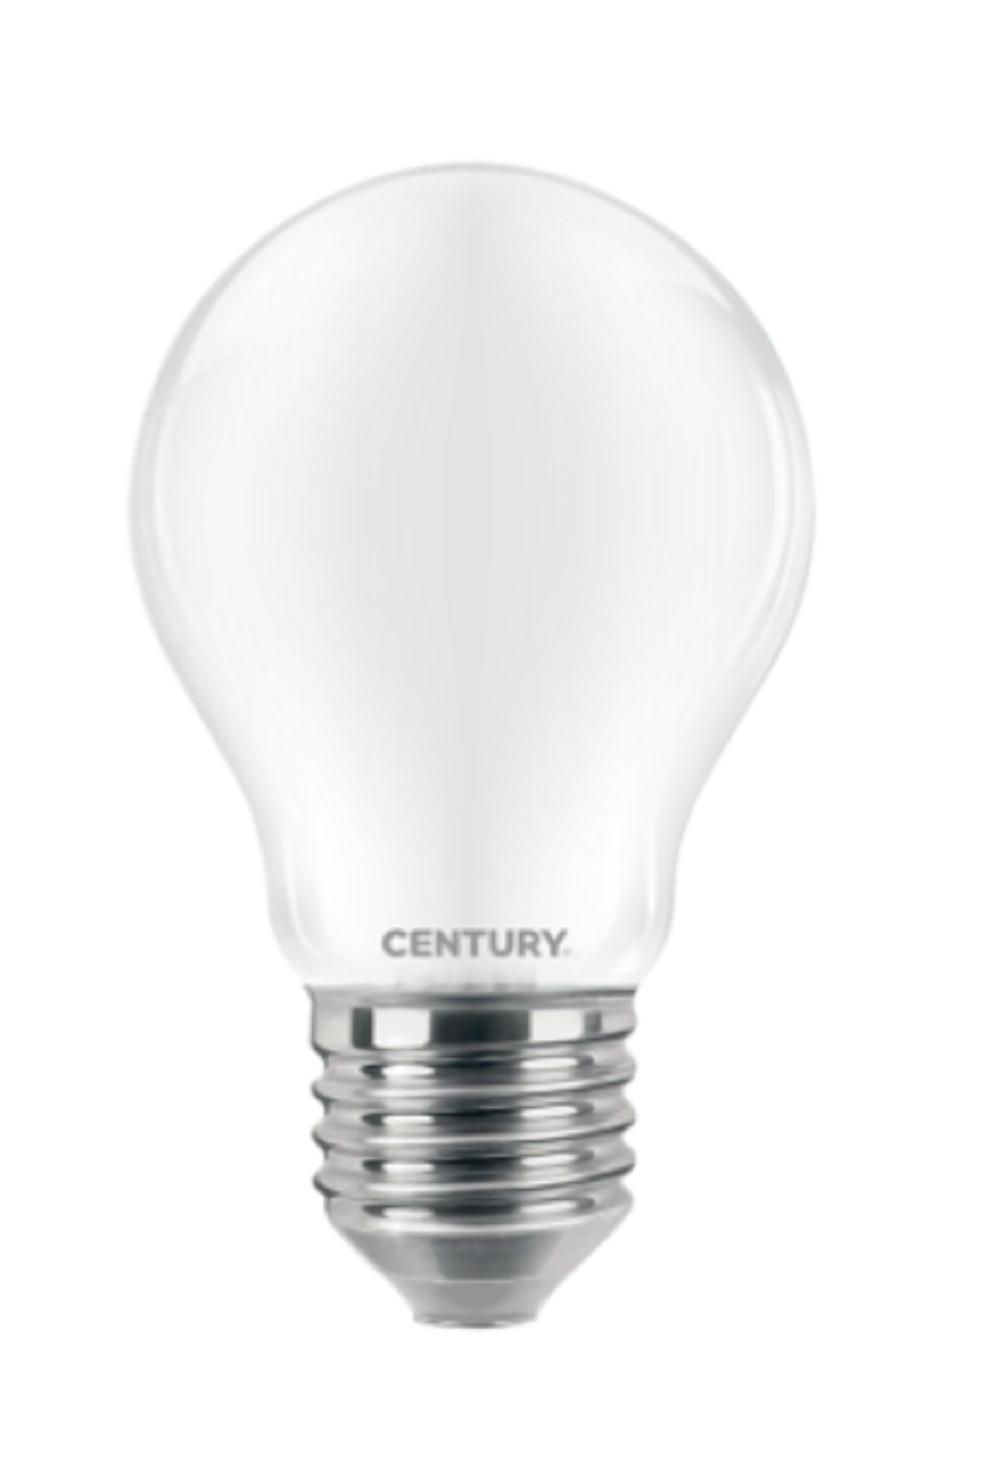 century century lampada a filamento led incanto saten goccia a60 - 12w - e27 - 6500k insg3-122760